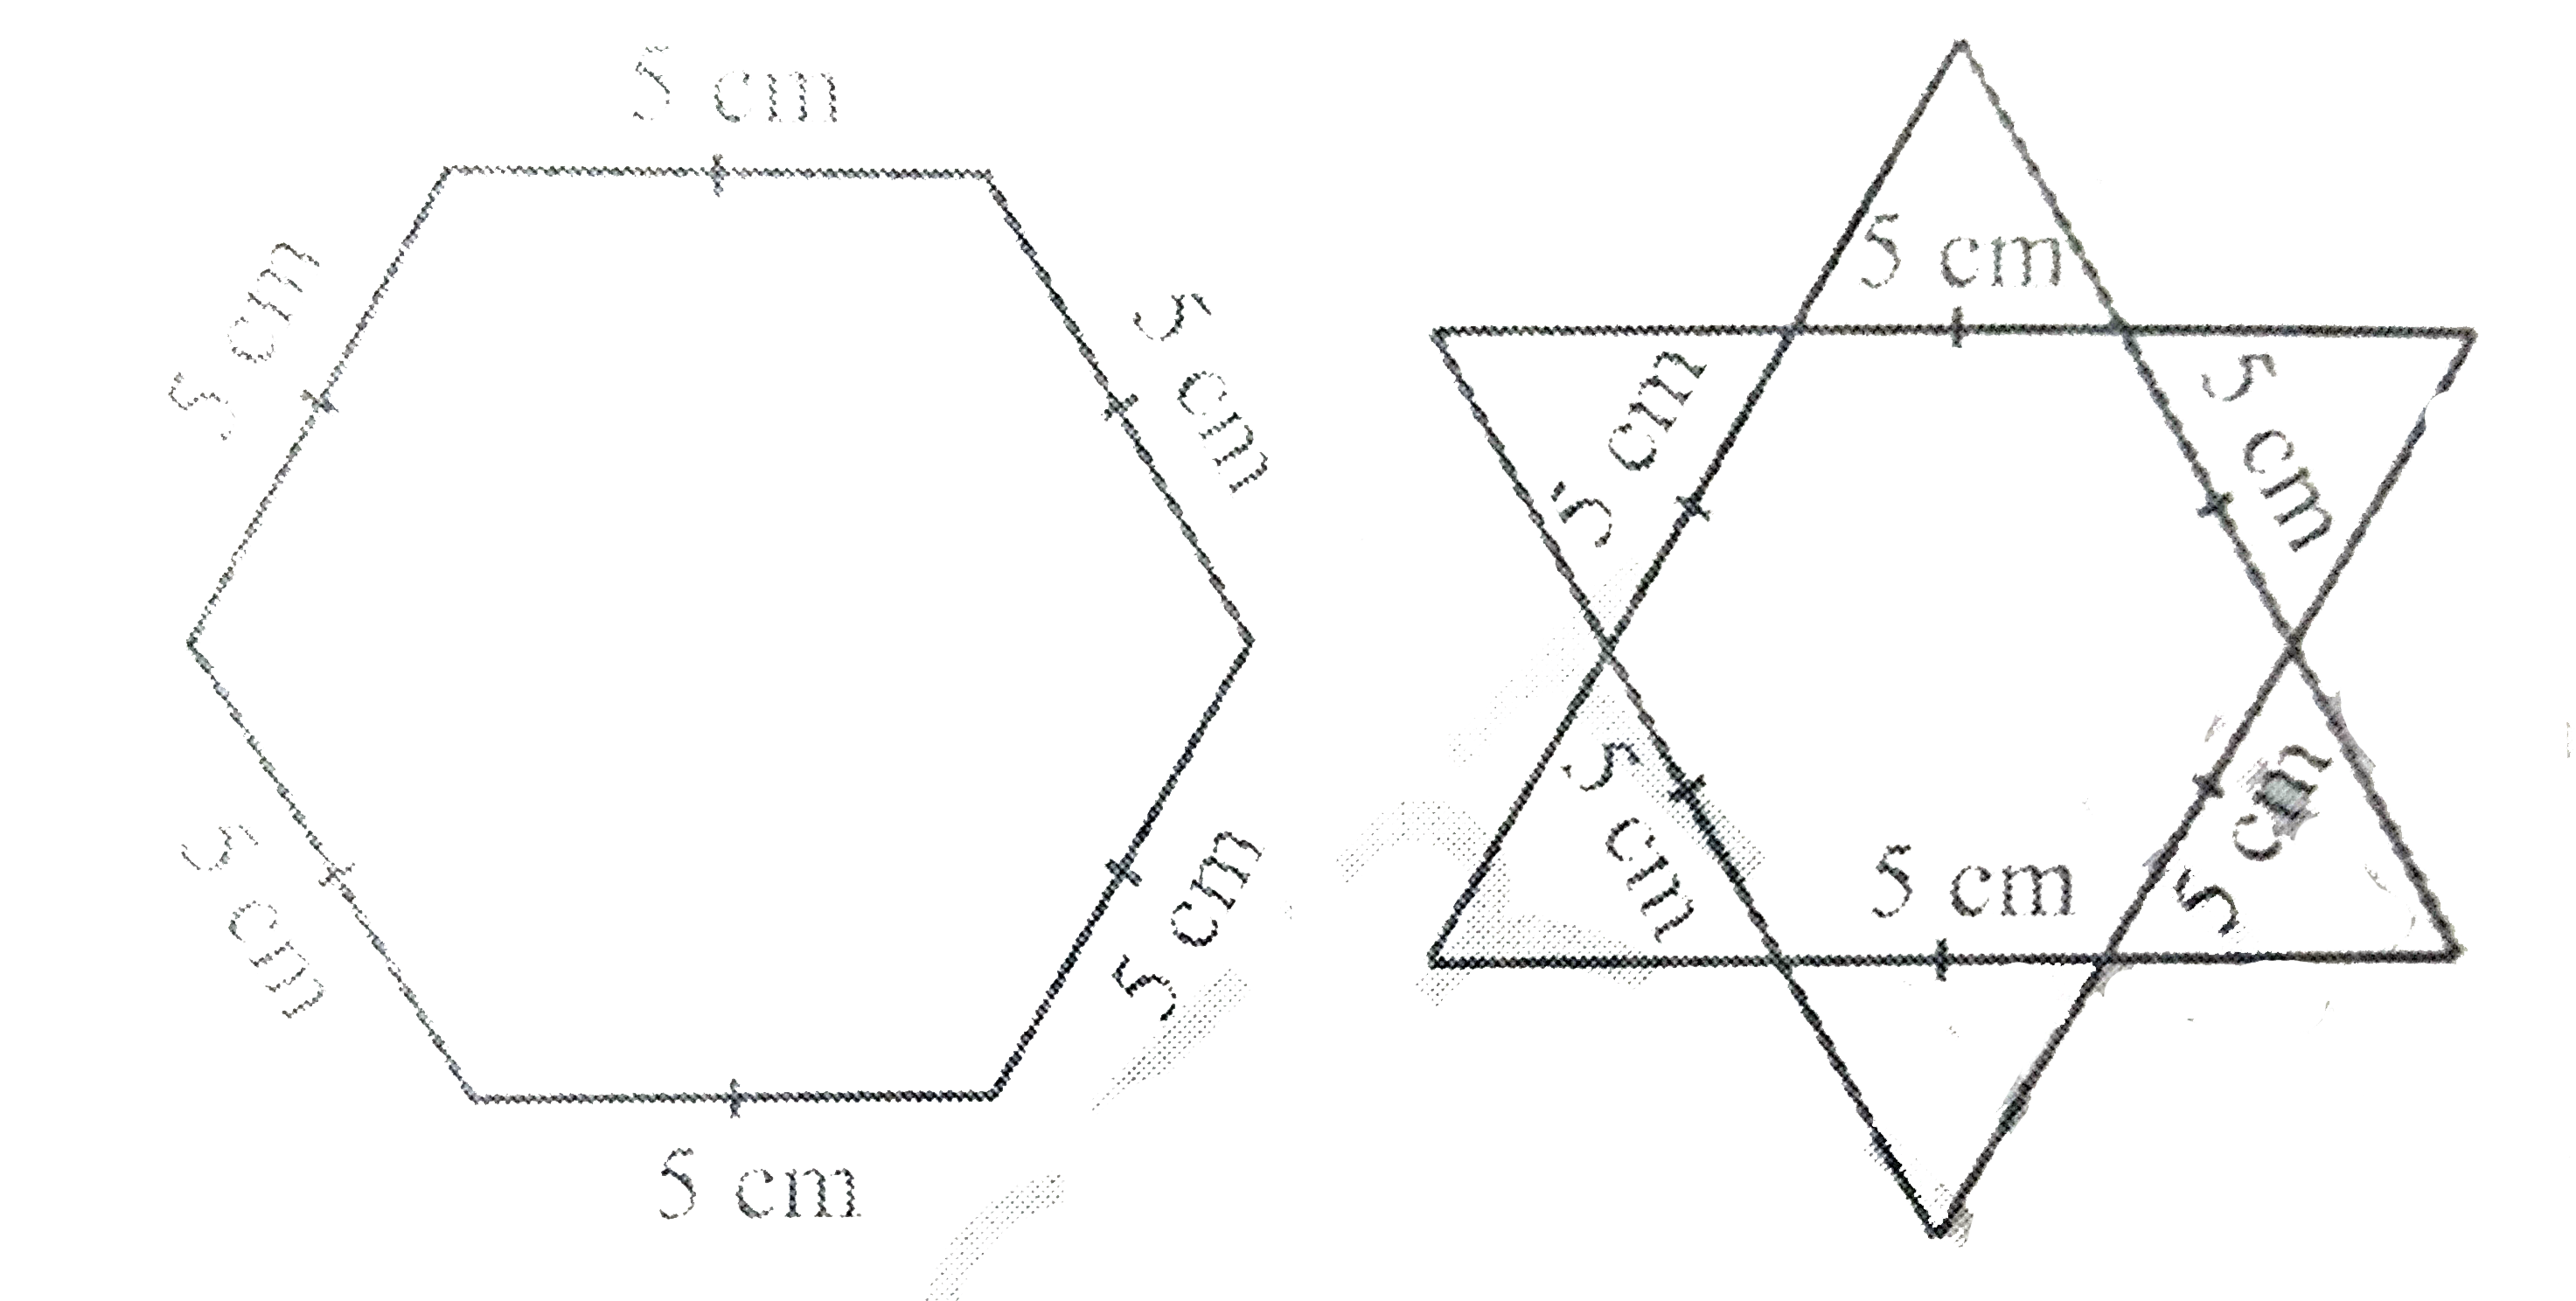 षडभुजीय और तारे के आकार की रंगोलियों  को  1 cm भुजा वाले समबाहु त्रिभुजों से भर कर पूरा कीजिए।  प्रत्येक स्थिति में, त्रिभुजों के संख्या गिनिए। किसमें अधिक त्रिभुज हैं?